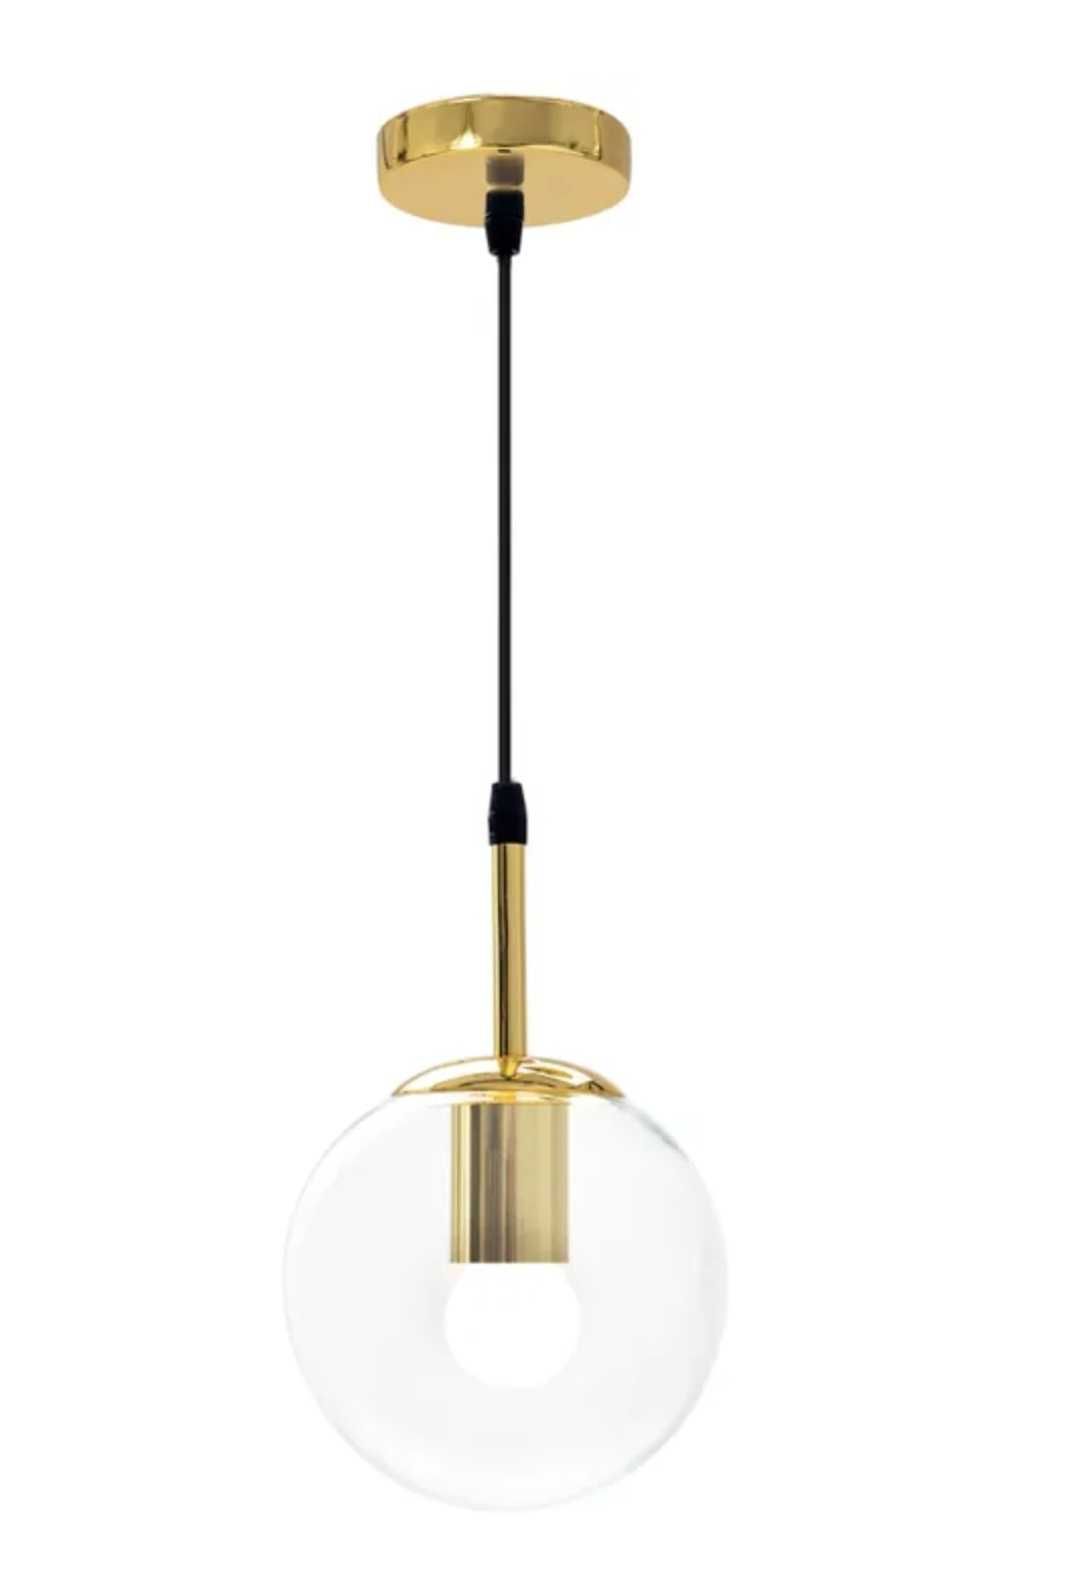 Lampa wisząca sufitowa kula APP686-1CP złota cena dotyczy 2 sztuk